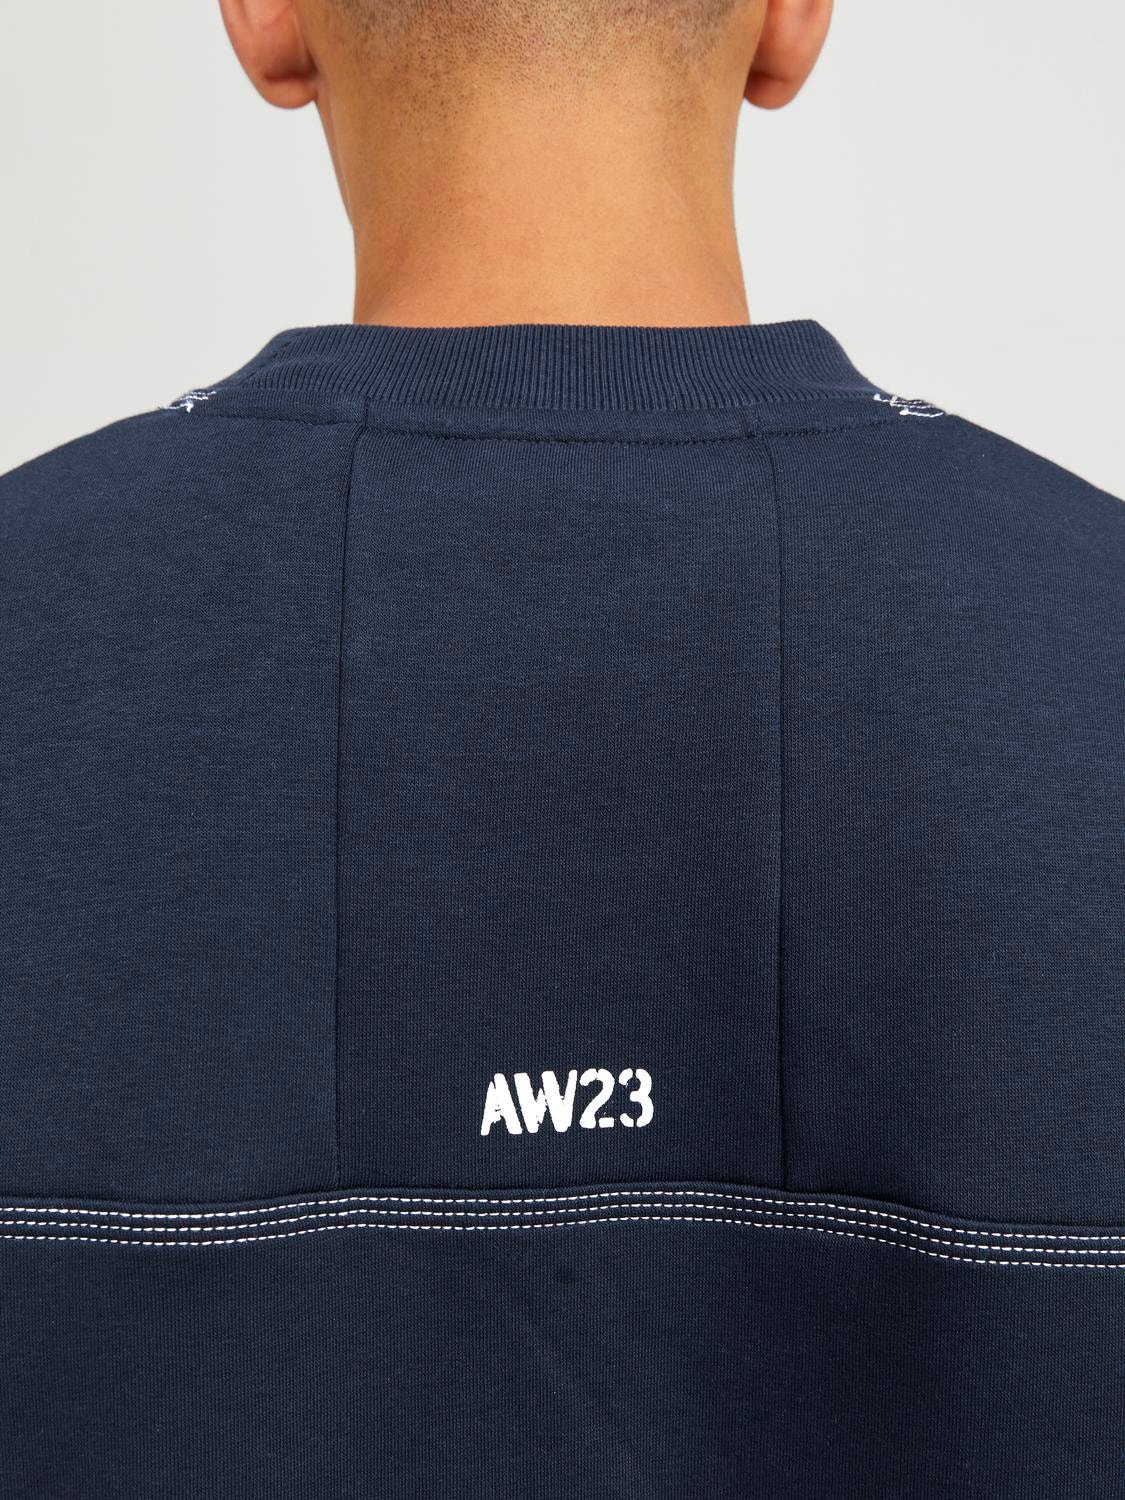 Jack & Jones Plain Crew neck Sweatshirt -Navy Blazer - 12247032